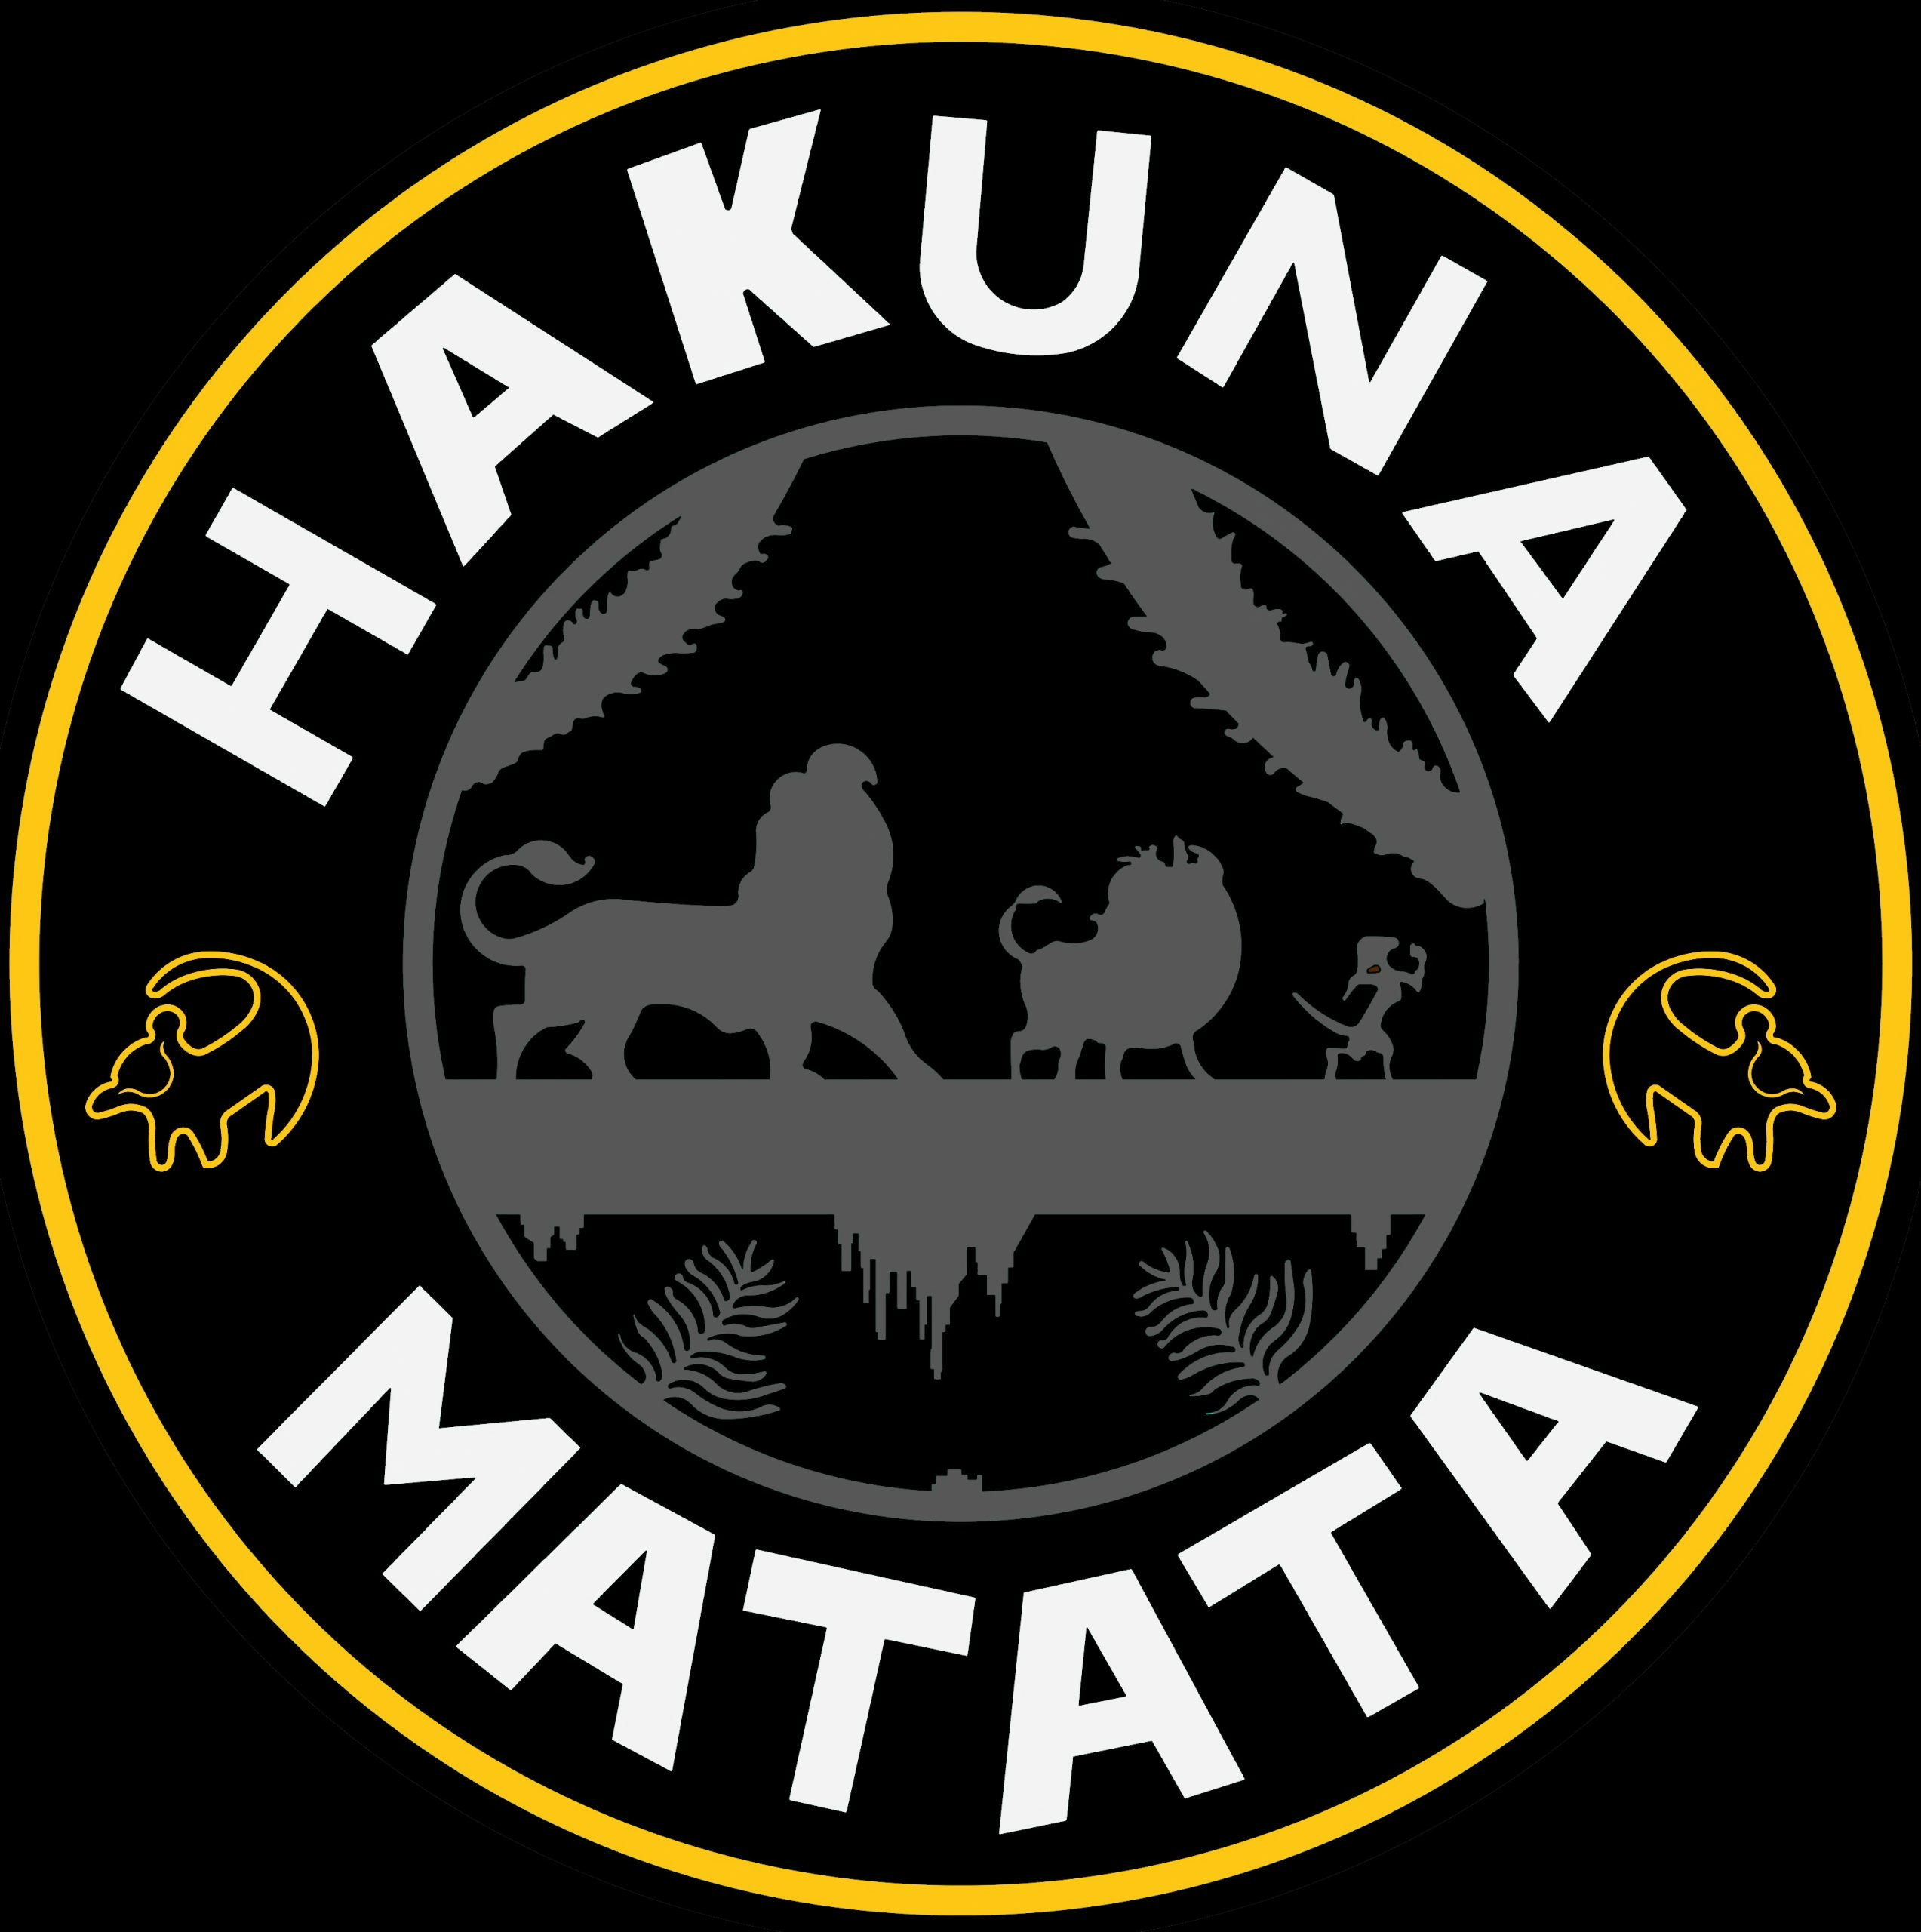 Hakuna Matata logo